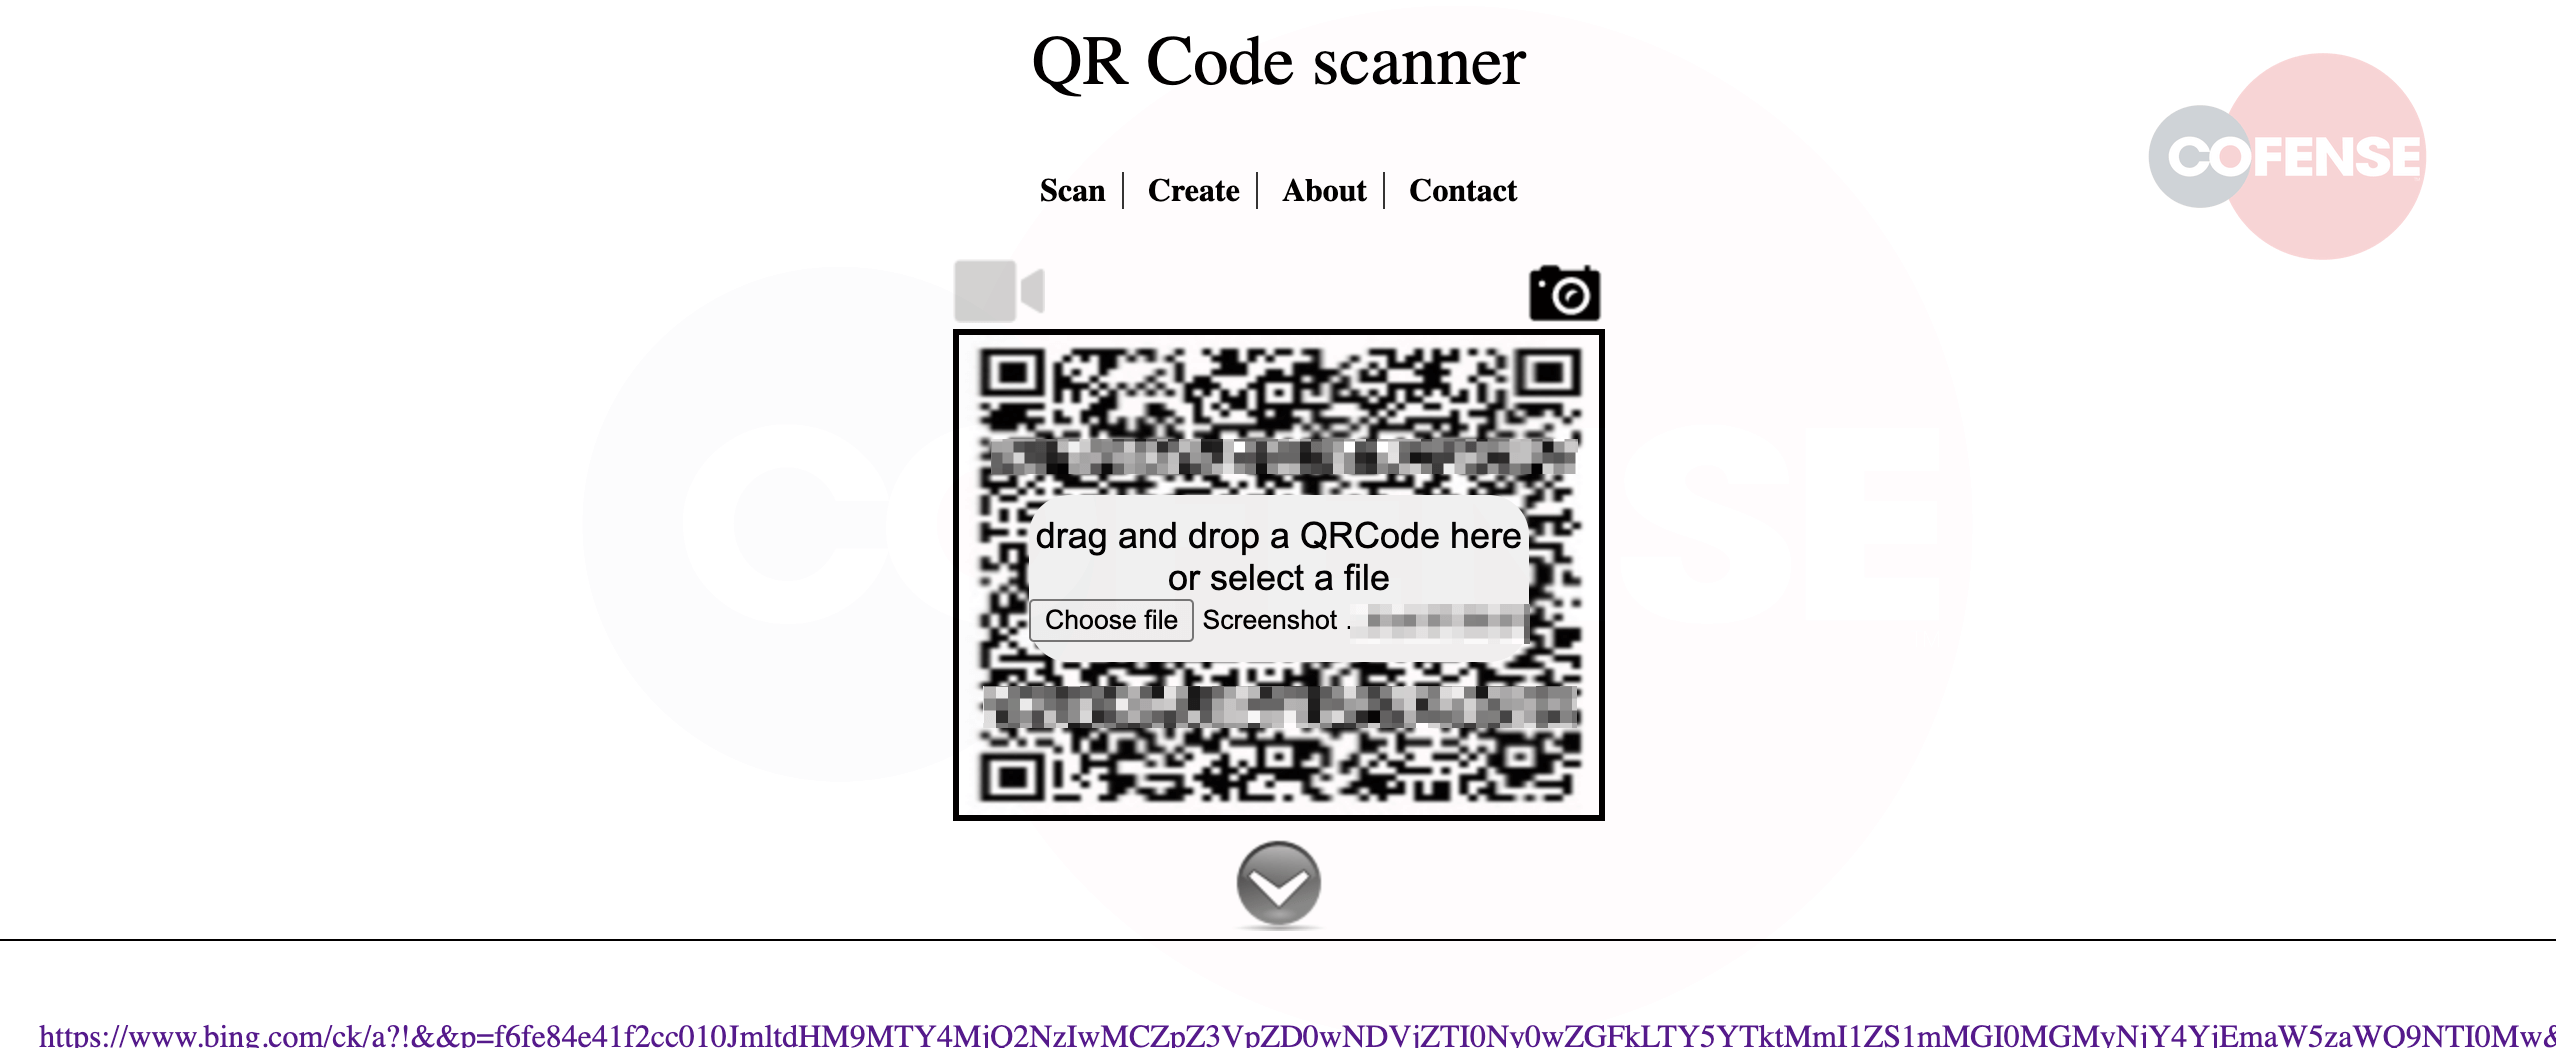 Abbildung 4 – Browser-QR-Code-Scanner 